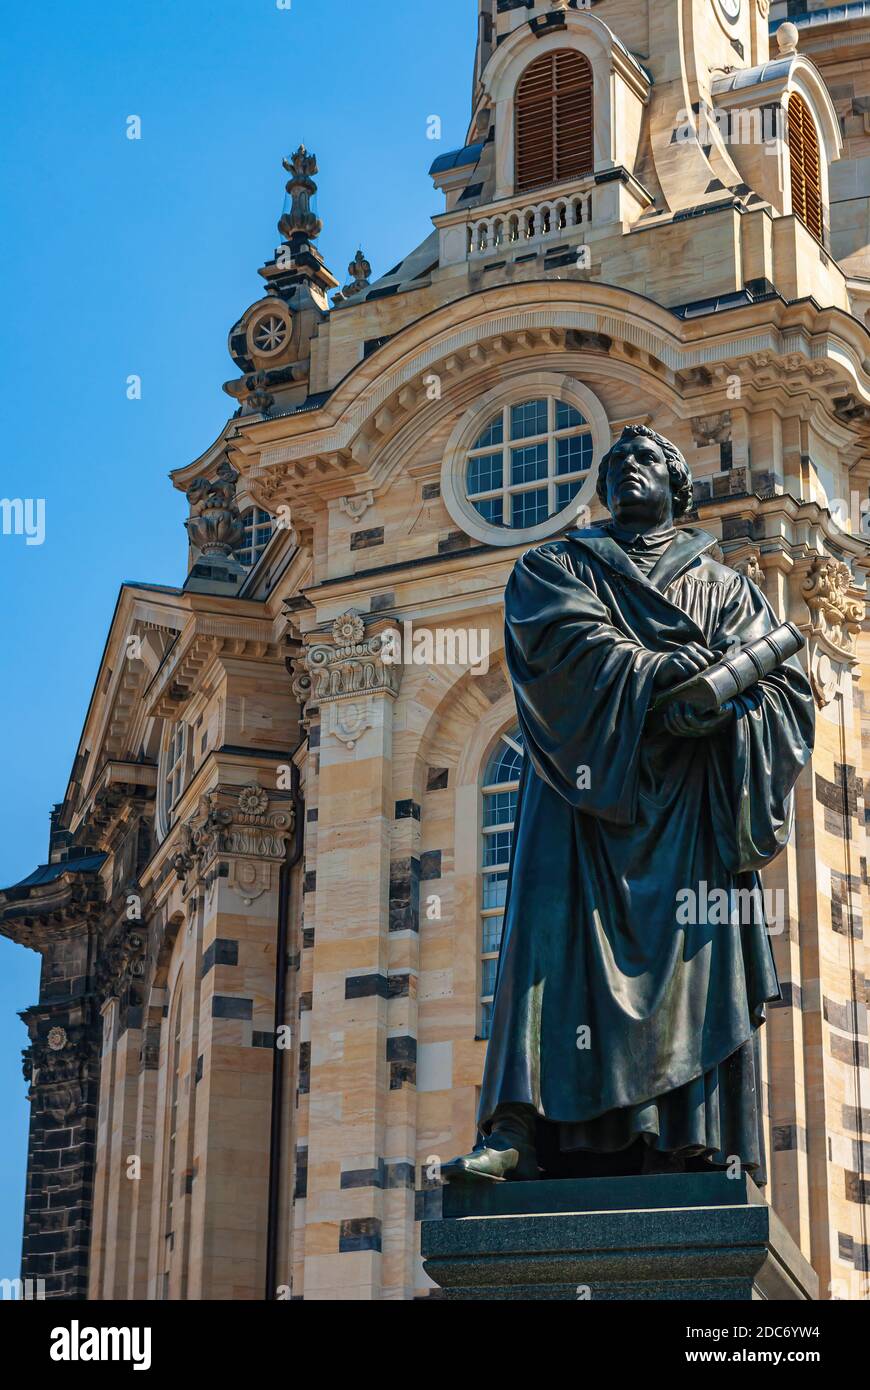 Mémorial du Docteur Martin Luther après Ernst Rietschel en face de l'église Frauenkirche , Dresde, Saxe, Allemagne. Banque D'Images